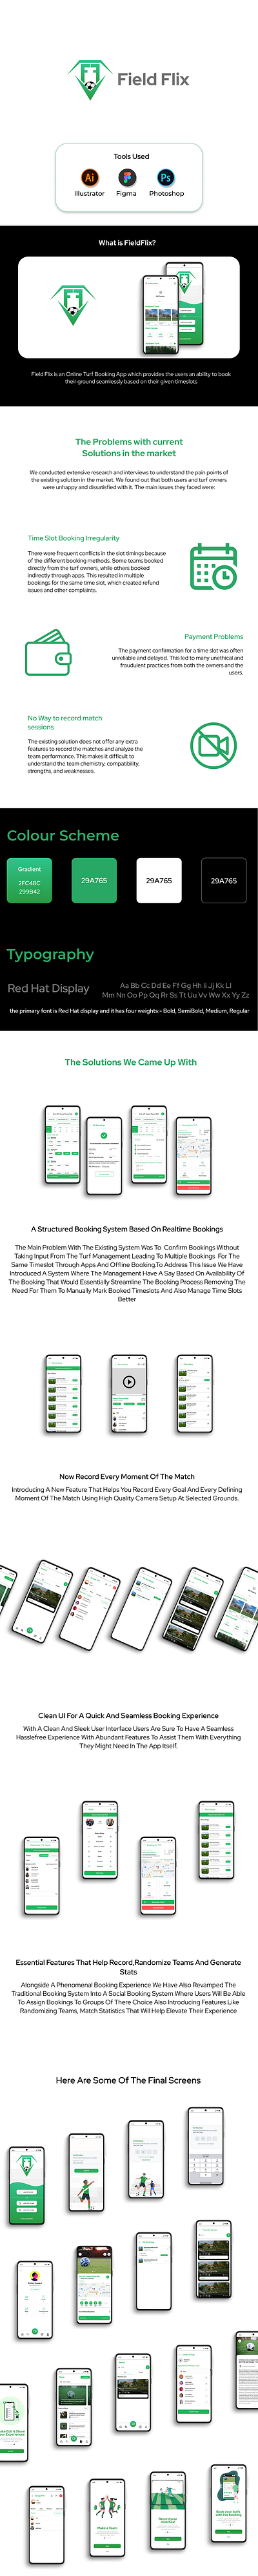 FieldFlix - An Online Ground Booking Platform app branding case study design graphic design typography ui ux